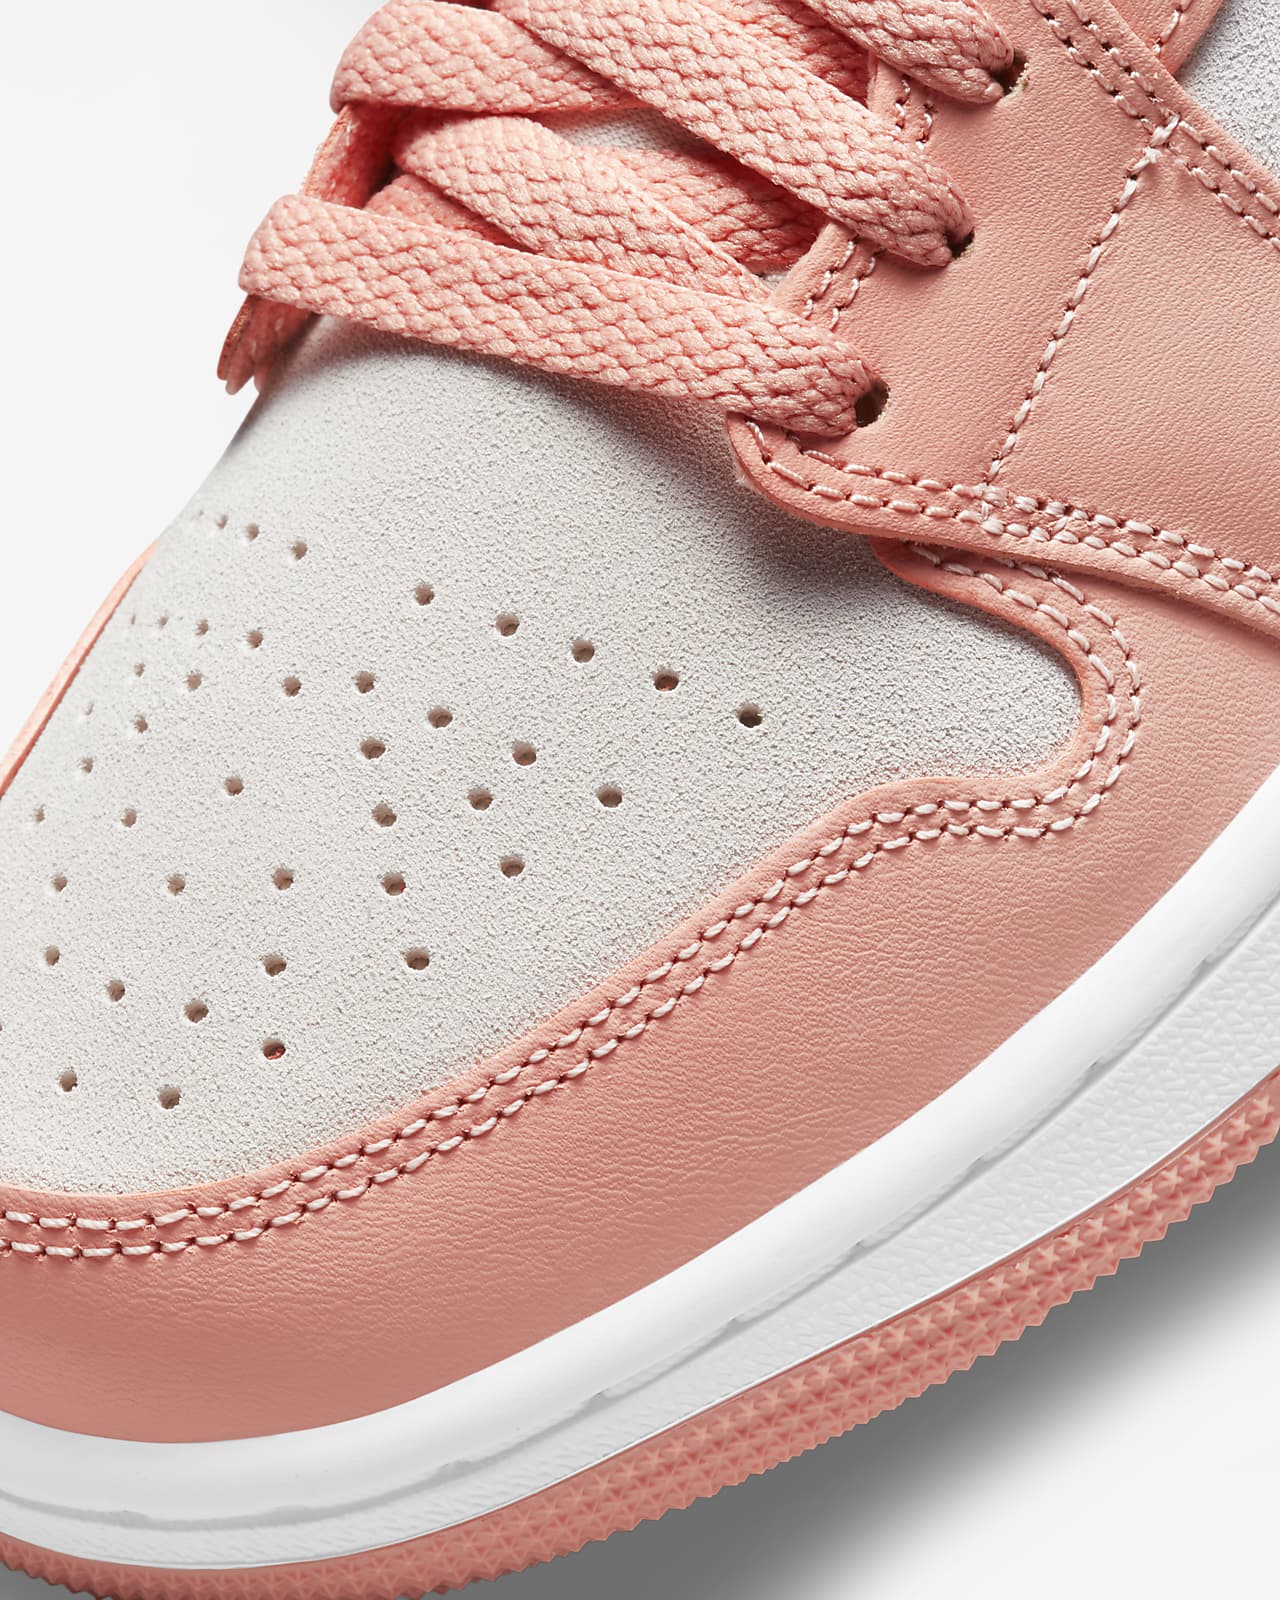 Air Jordan 1 jordan 1 low pink Low Women's Shoe. Nike PH